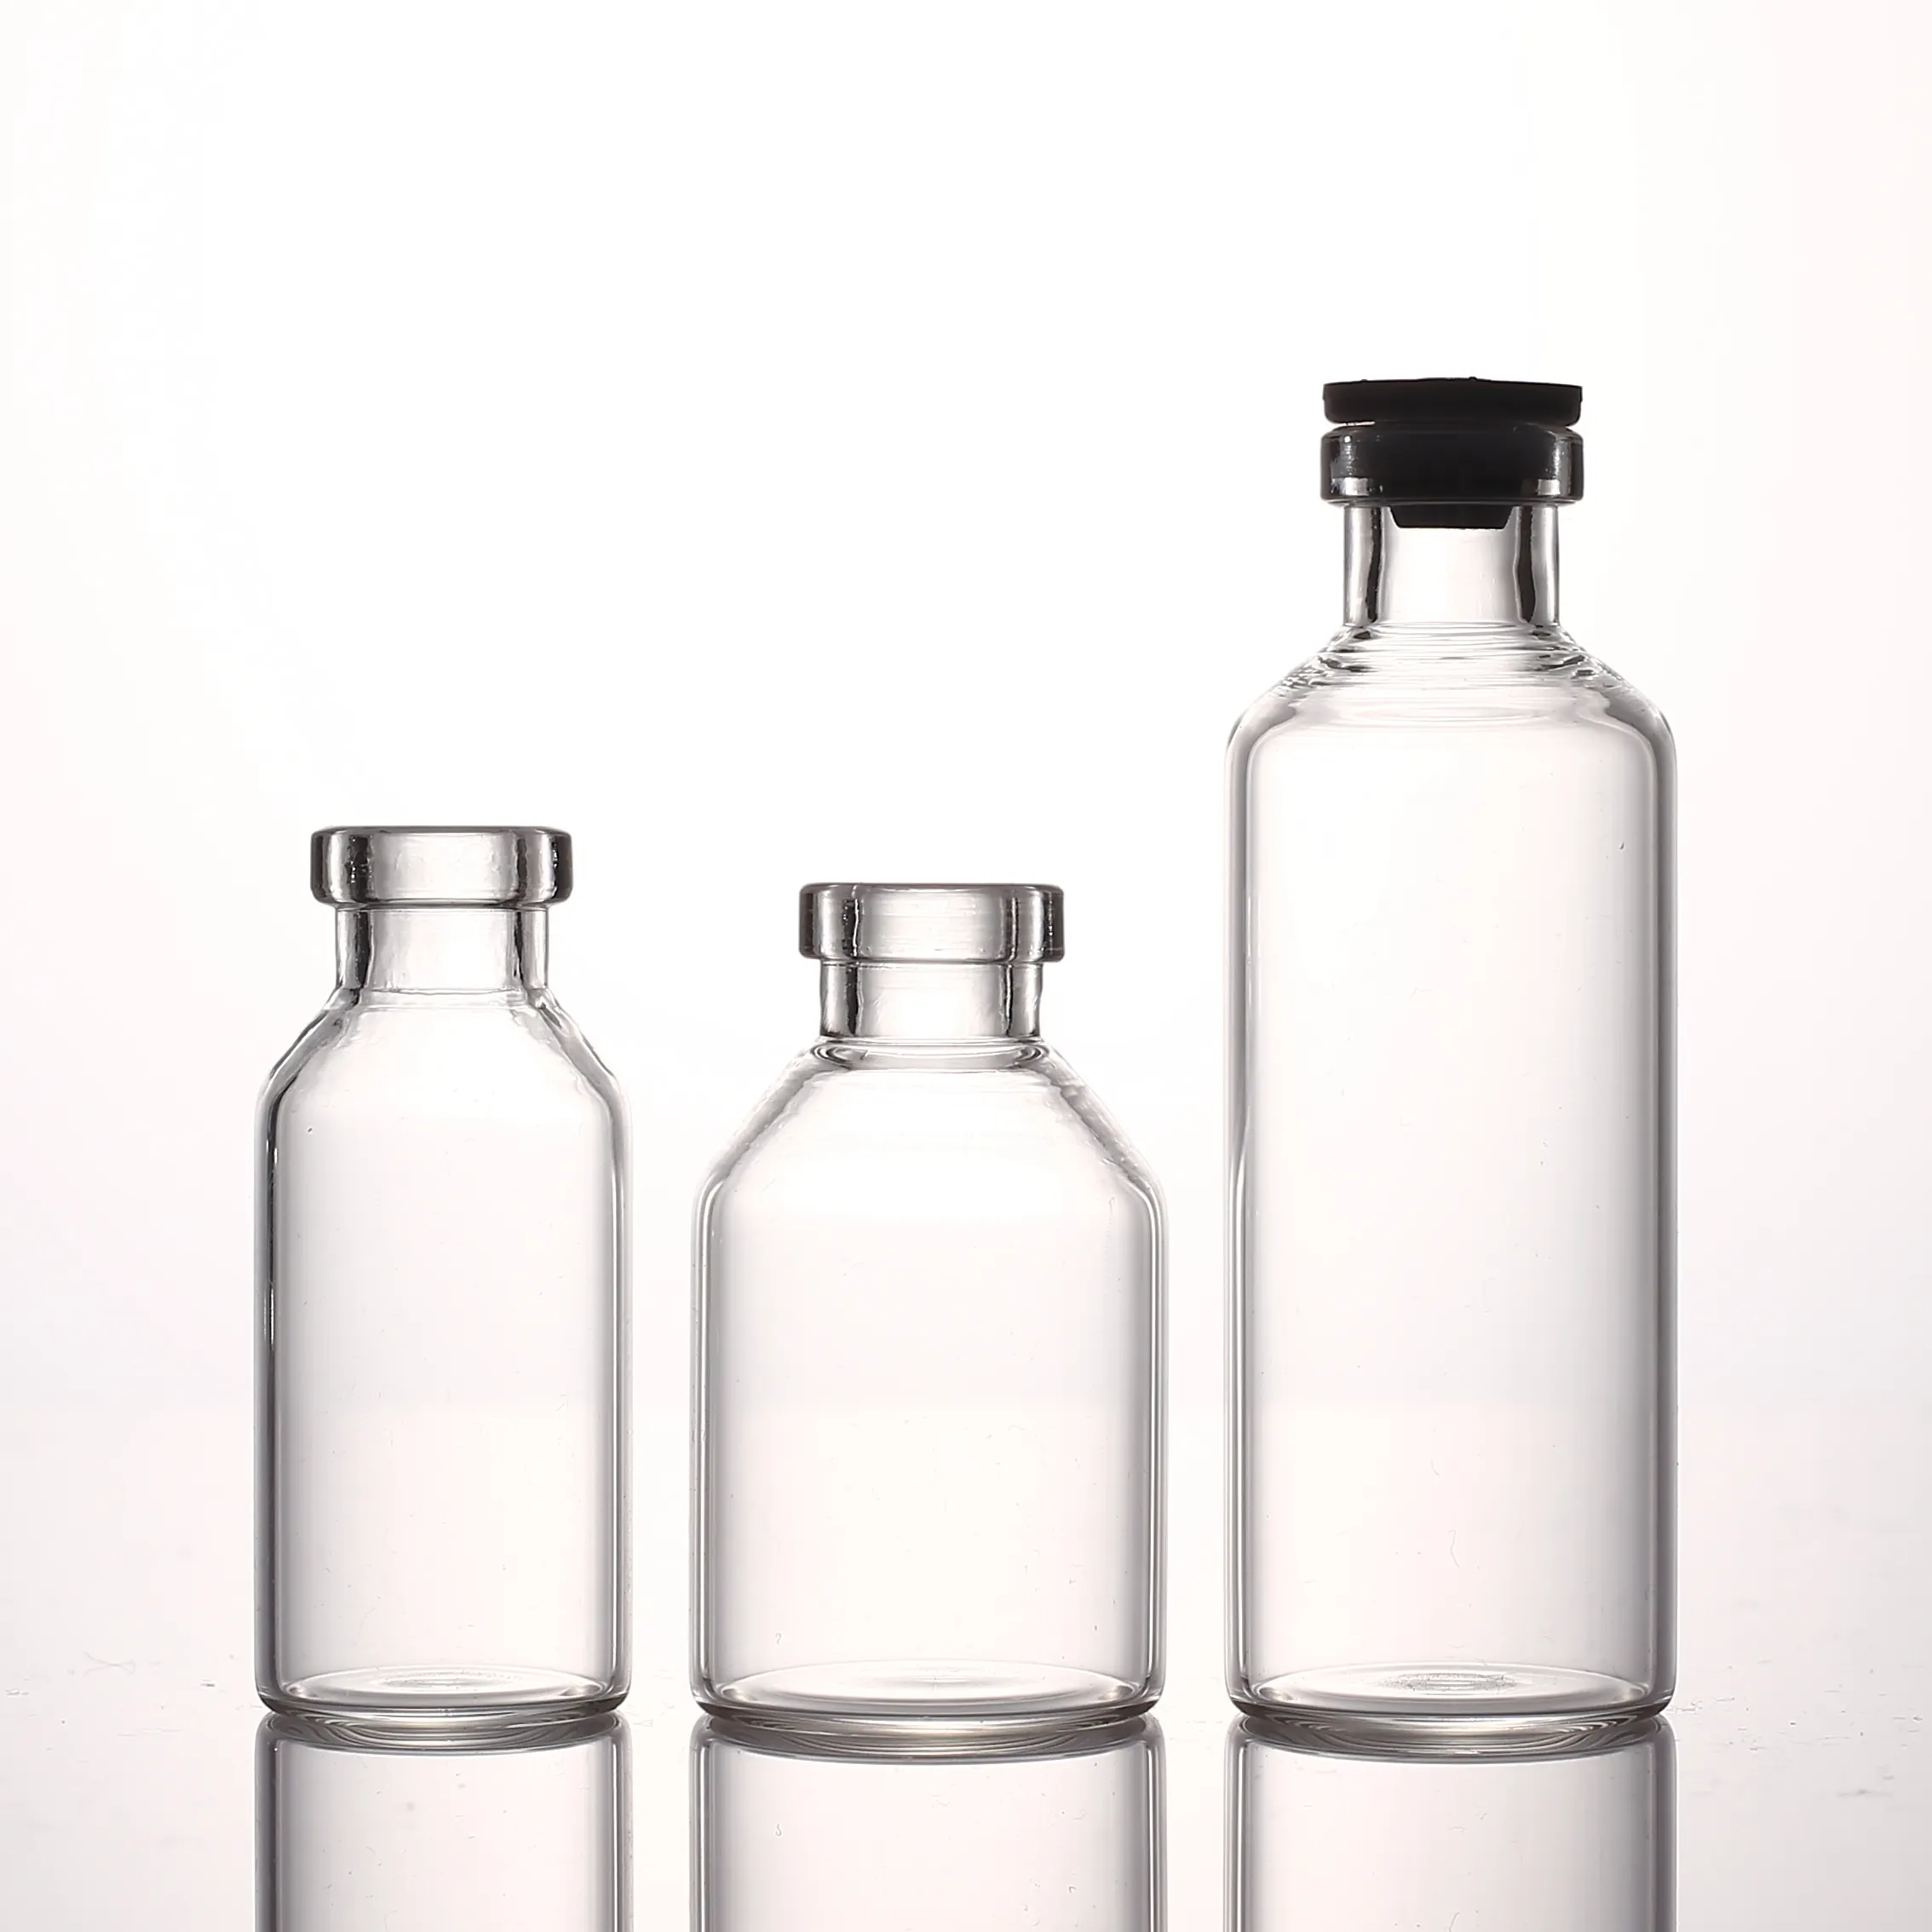 Produttori 5ml 7ml 10ml 15ml fiale per iniezione farmaceutica bottiglie di vetro